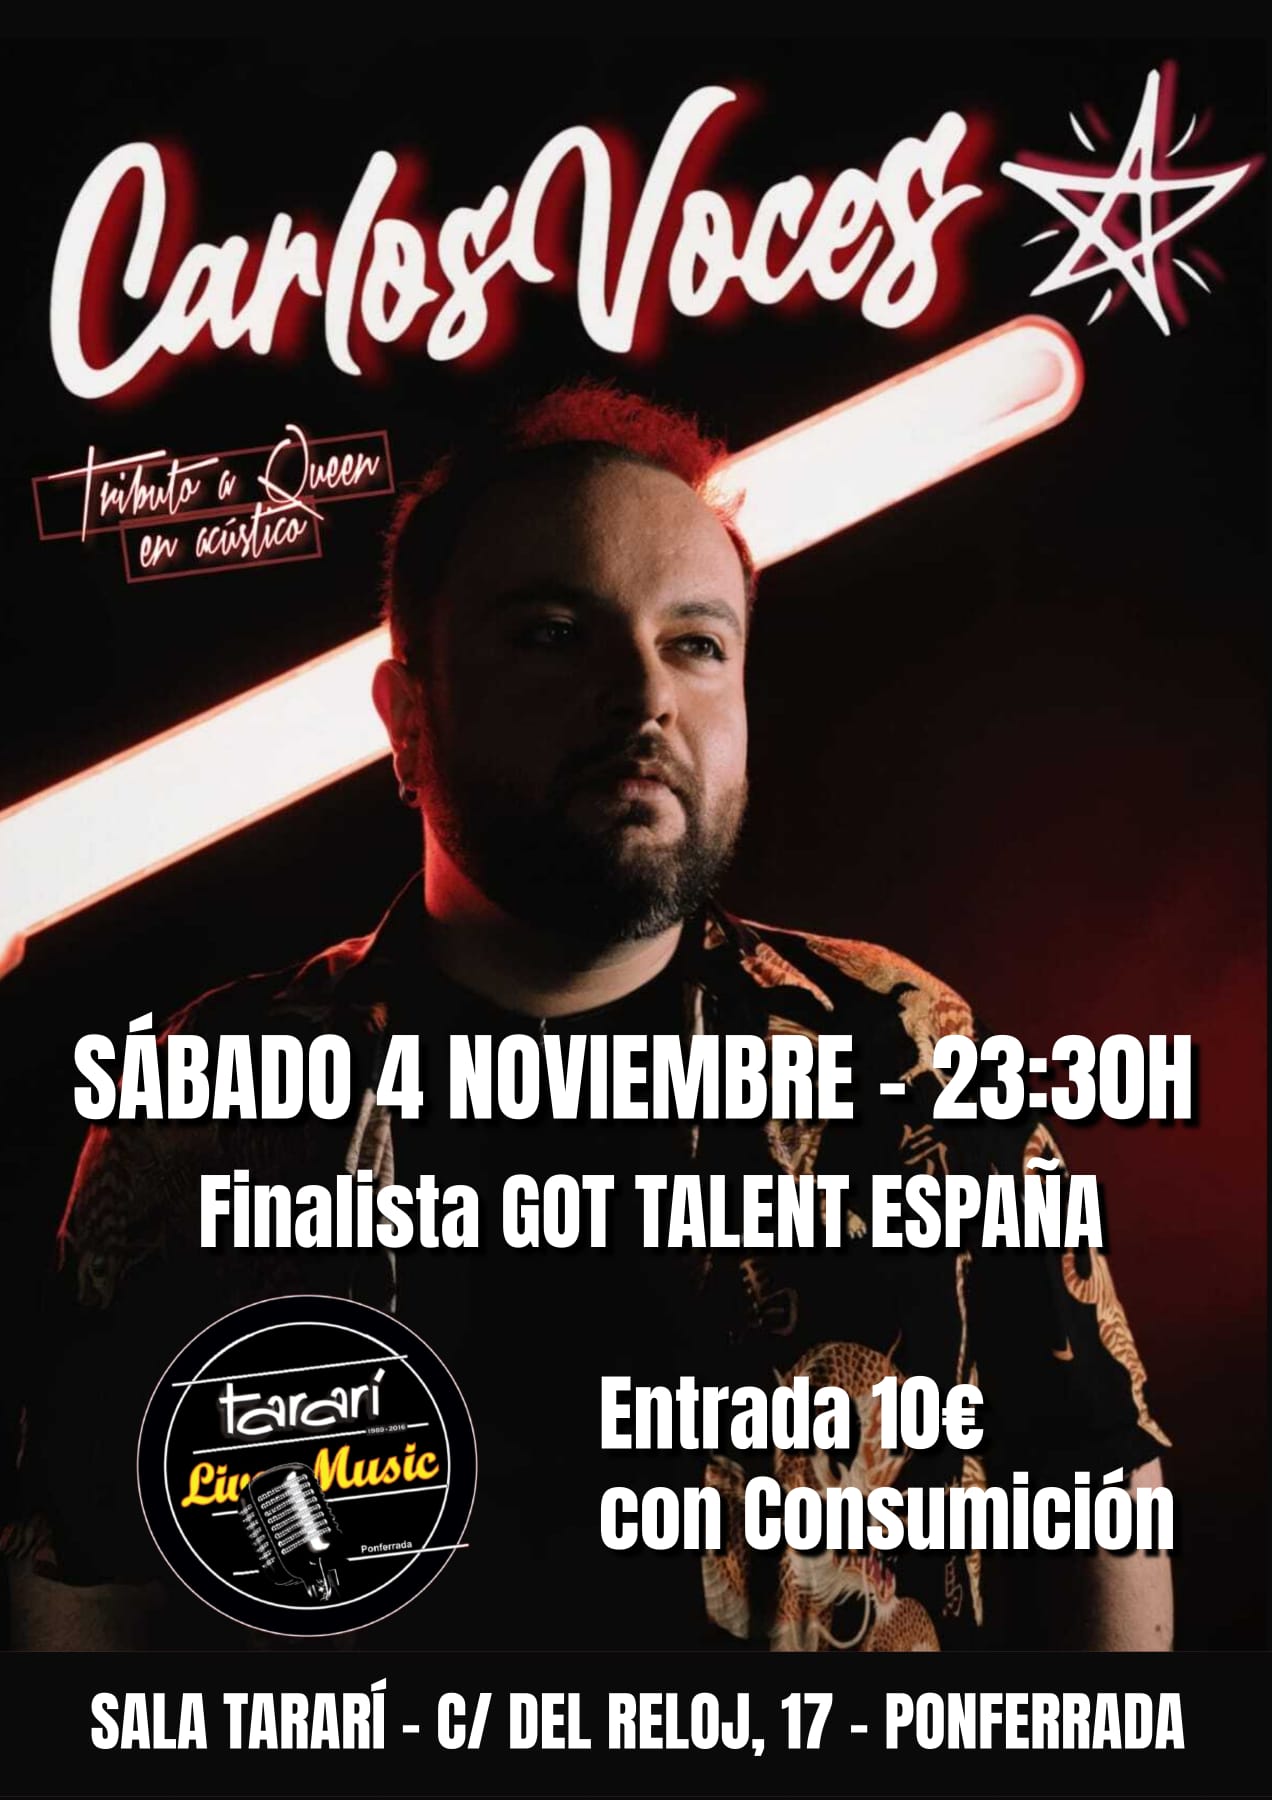 La espectacular voz de Carlos Voces llega de Got Talent a la Sala Tararí en un inolvidable tributo a Queen 2